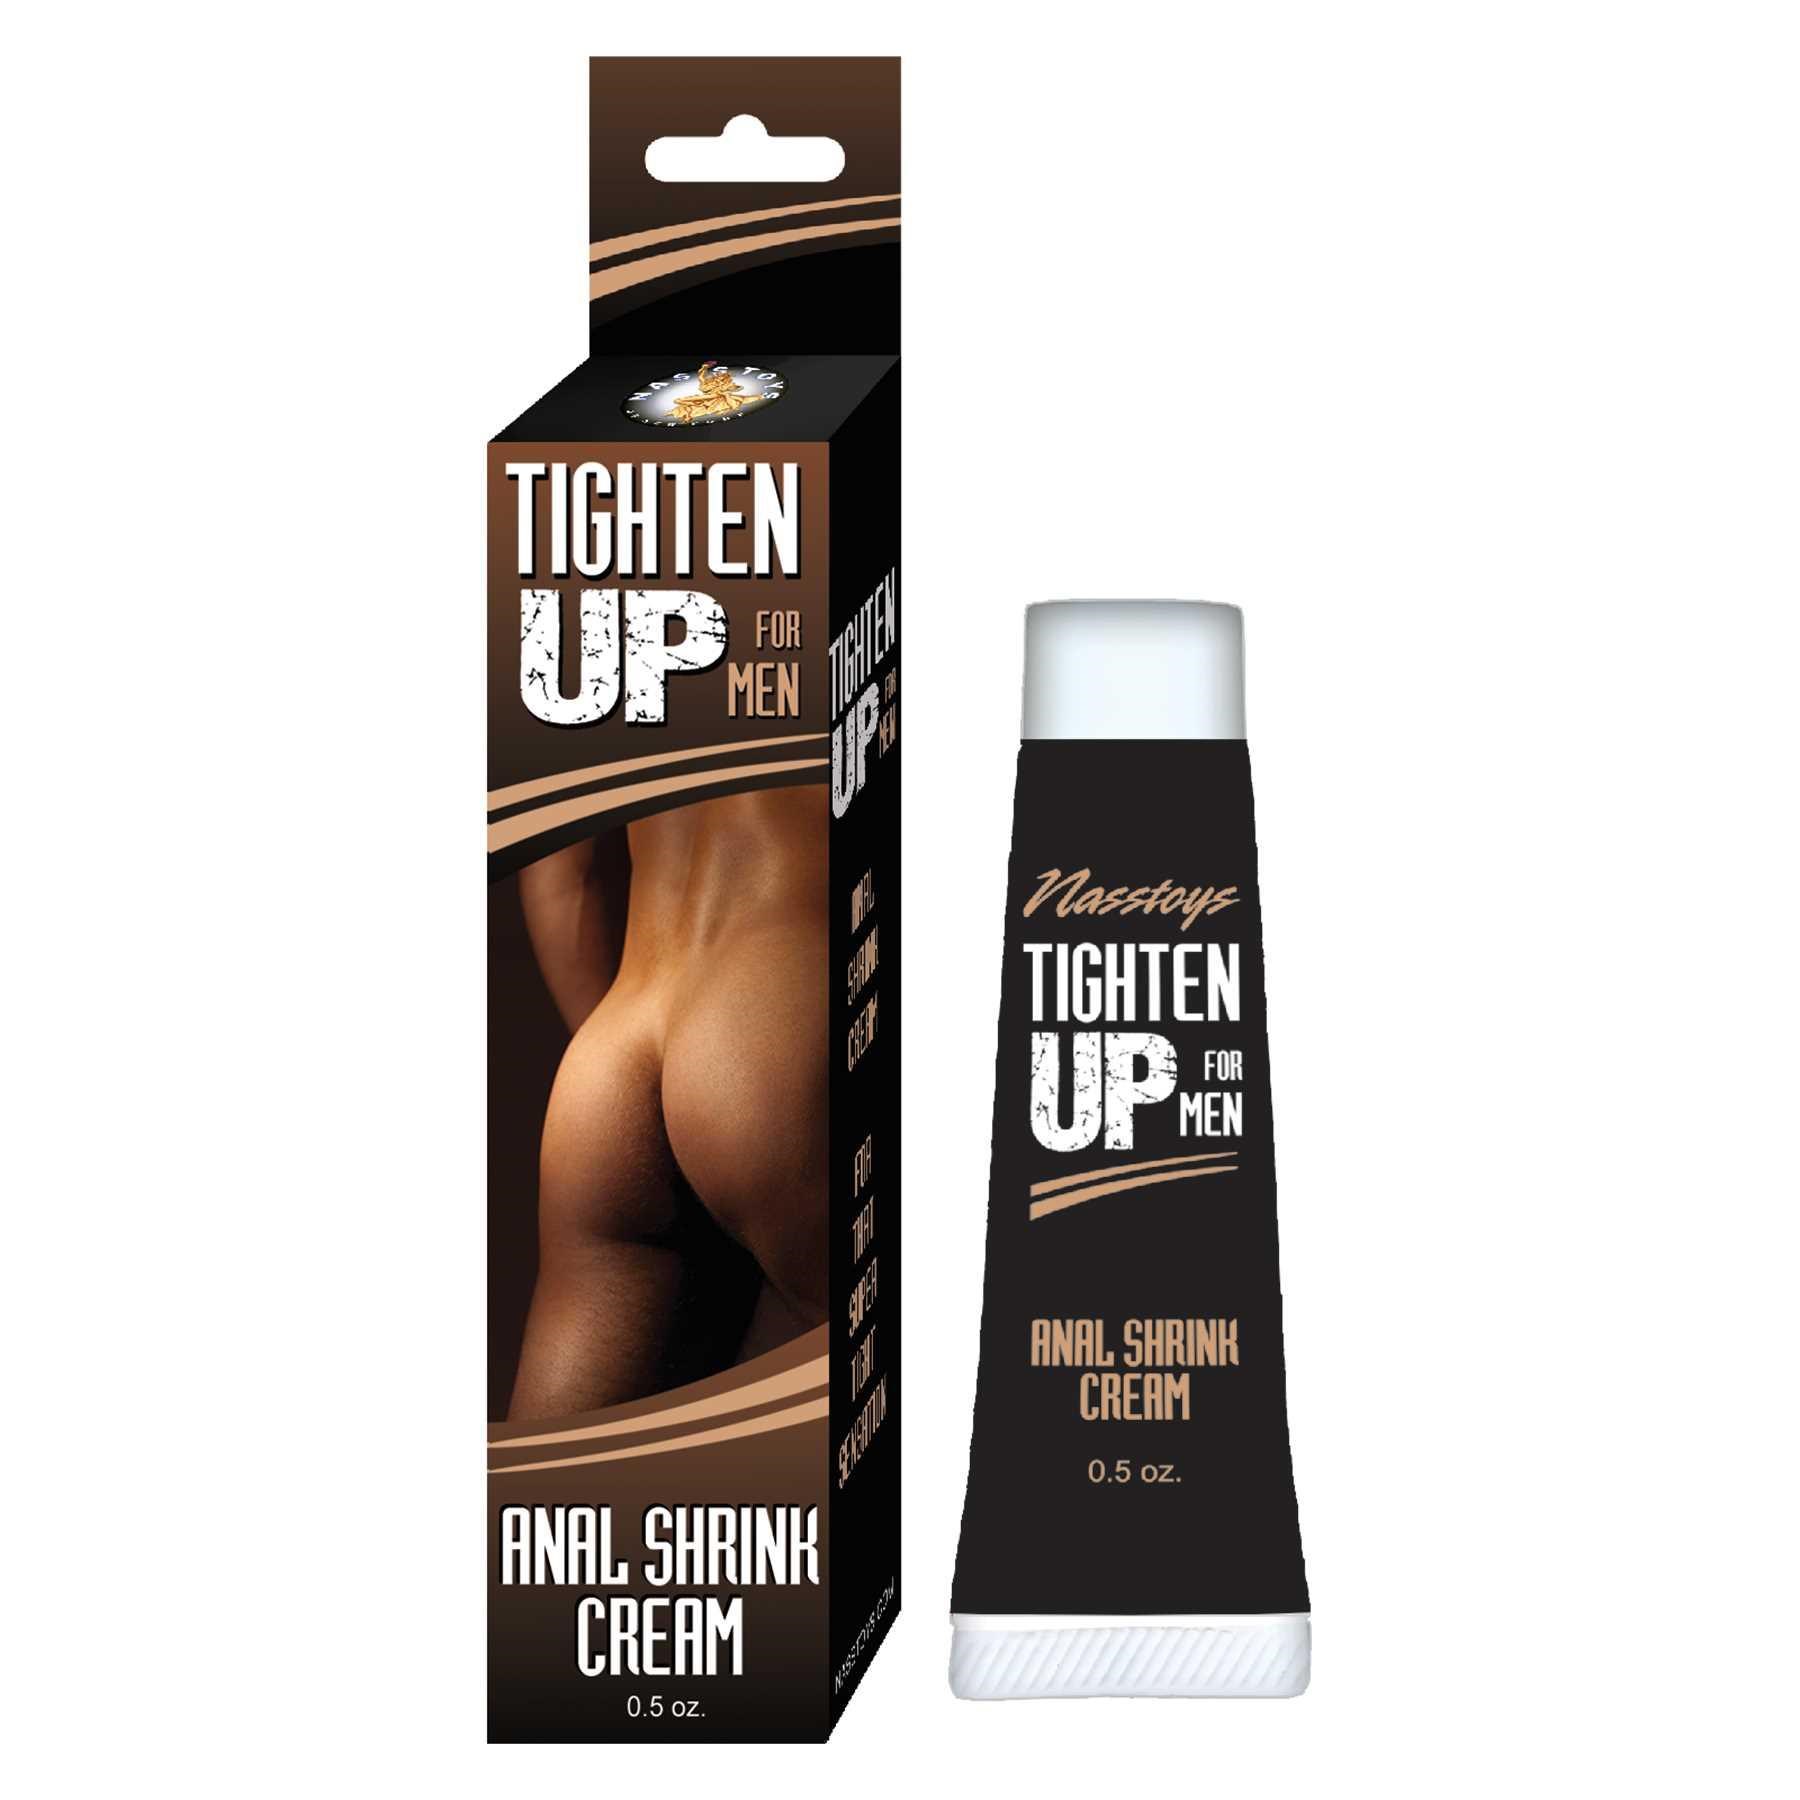 Tighten Up For Men Anal Shrink Cream packaging